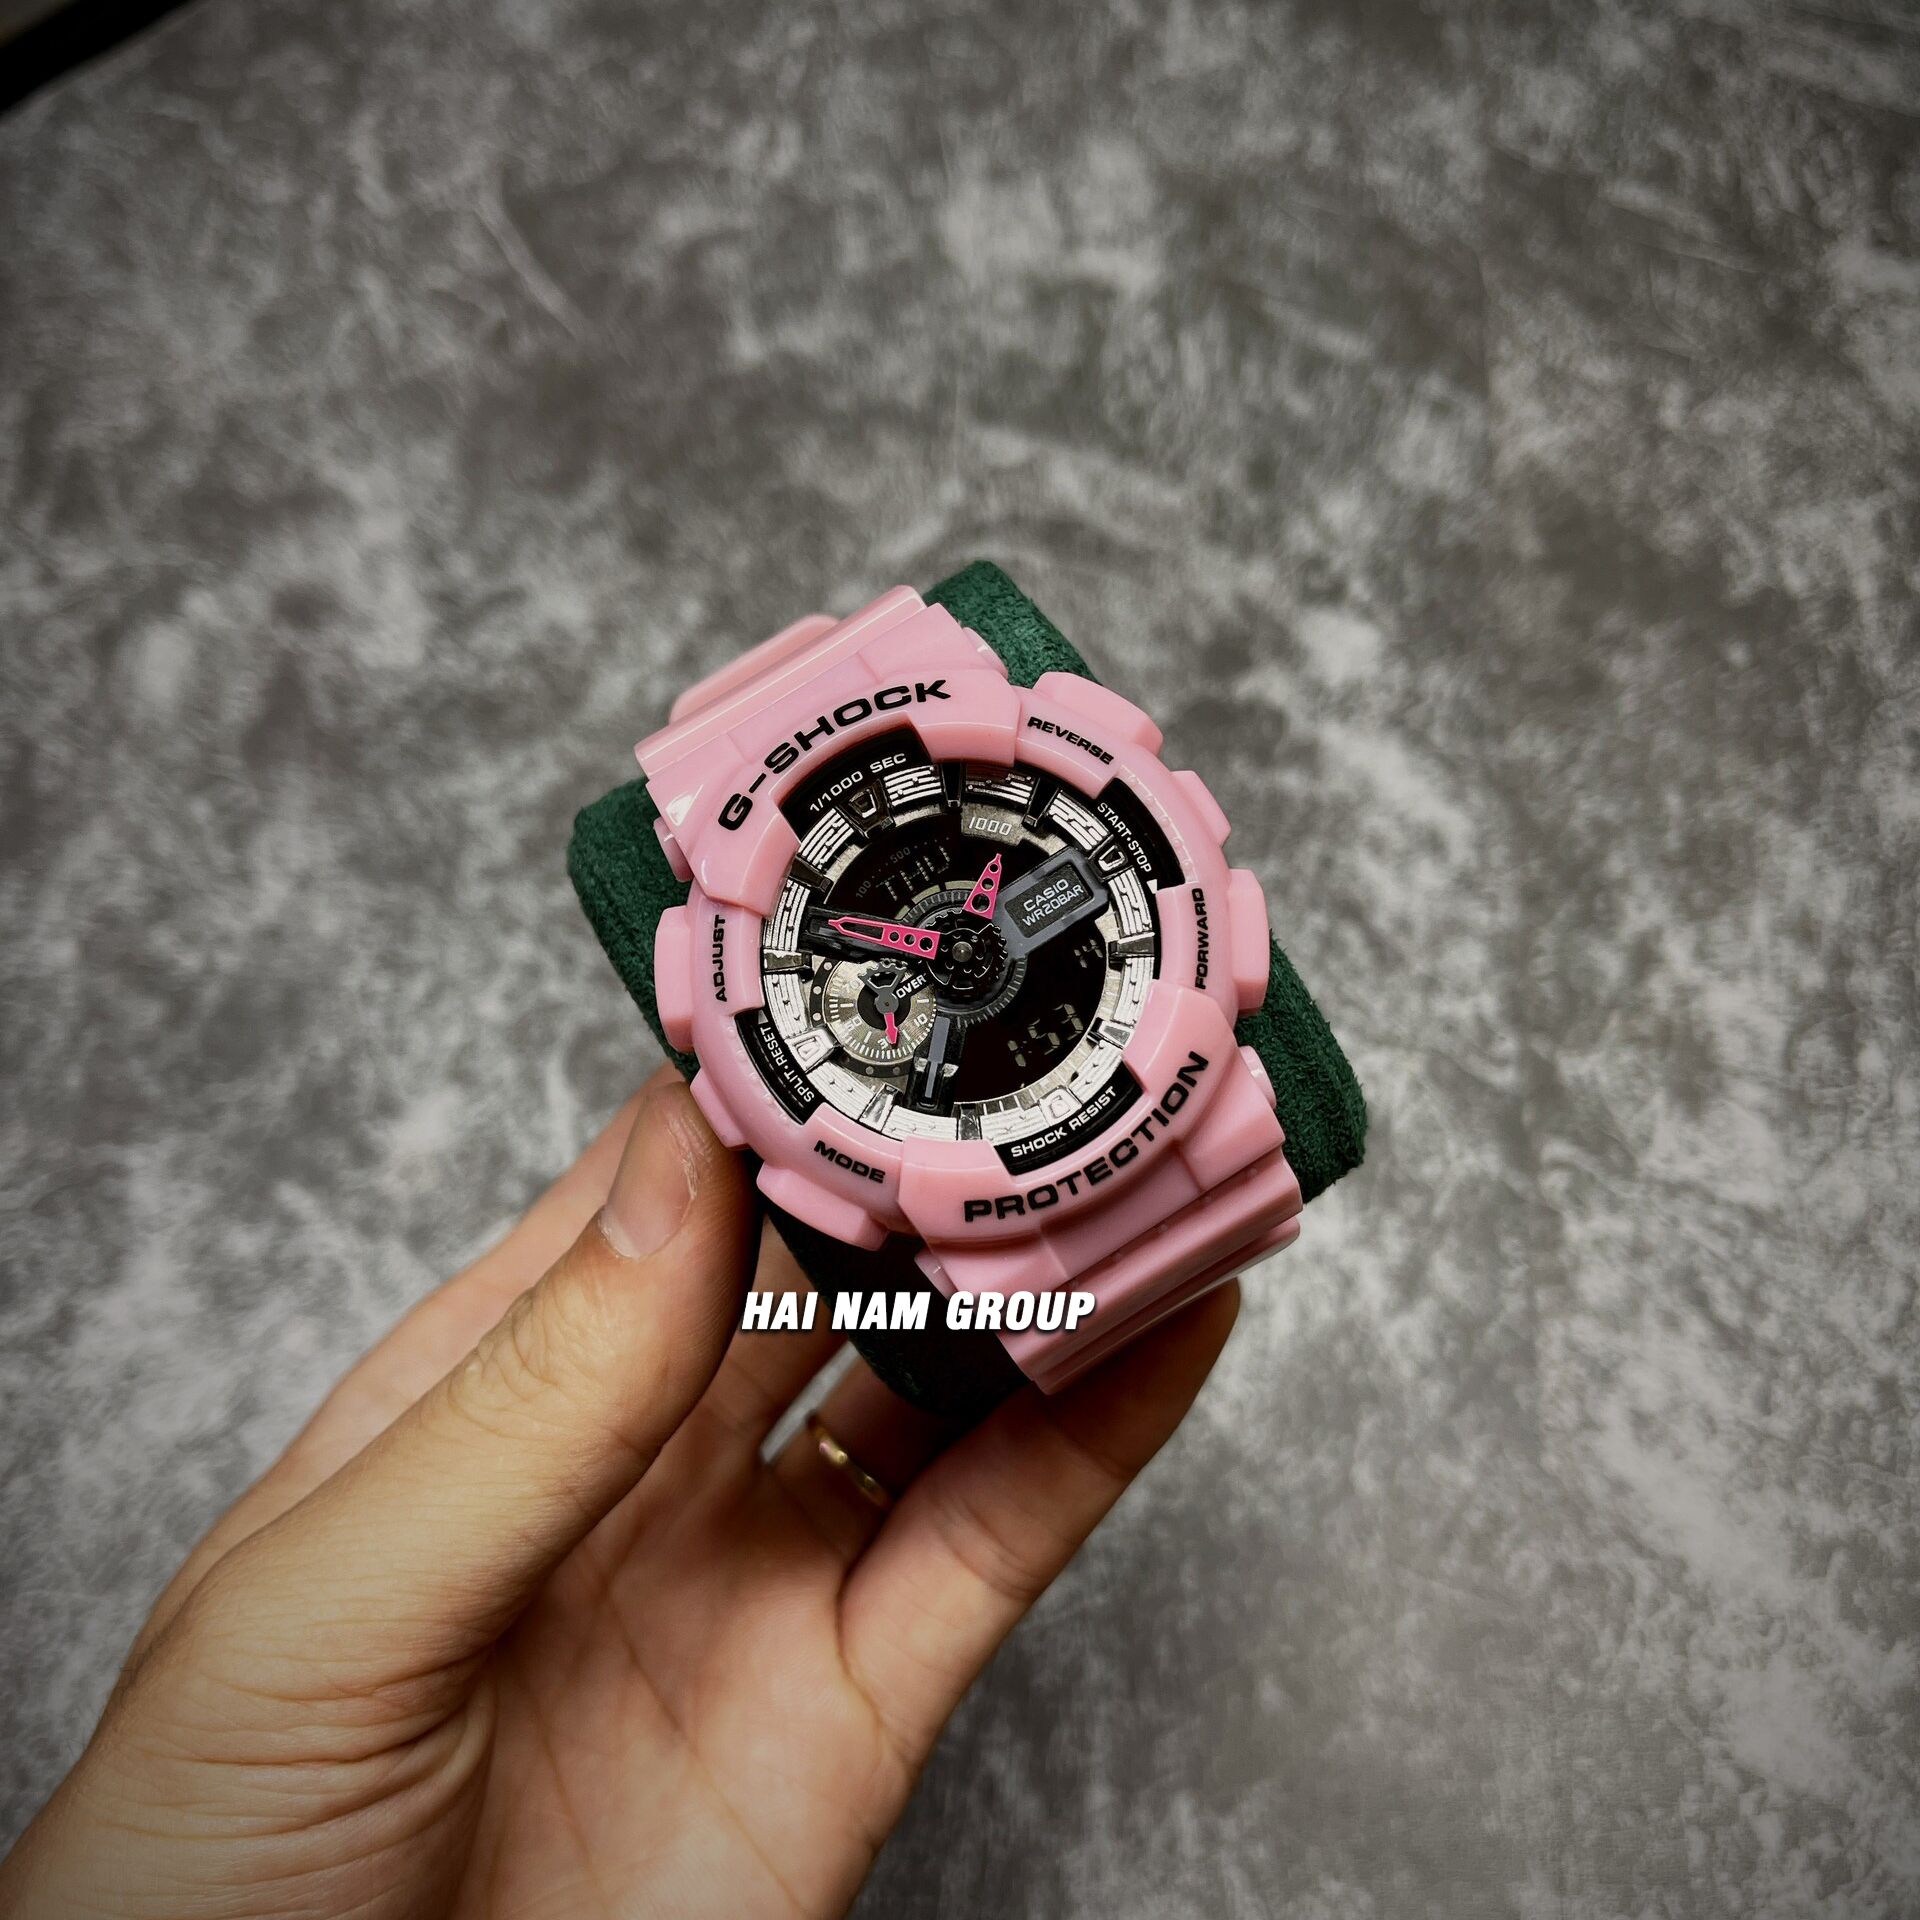 Đồng hồ nam nữ G-SHOCK GA-110-3D REP 1:1 Hồng Mặt Bạc tại Hải Nam Group 3